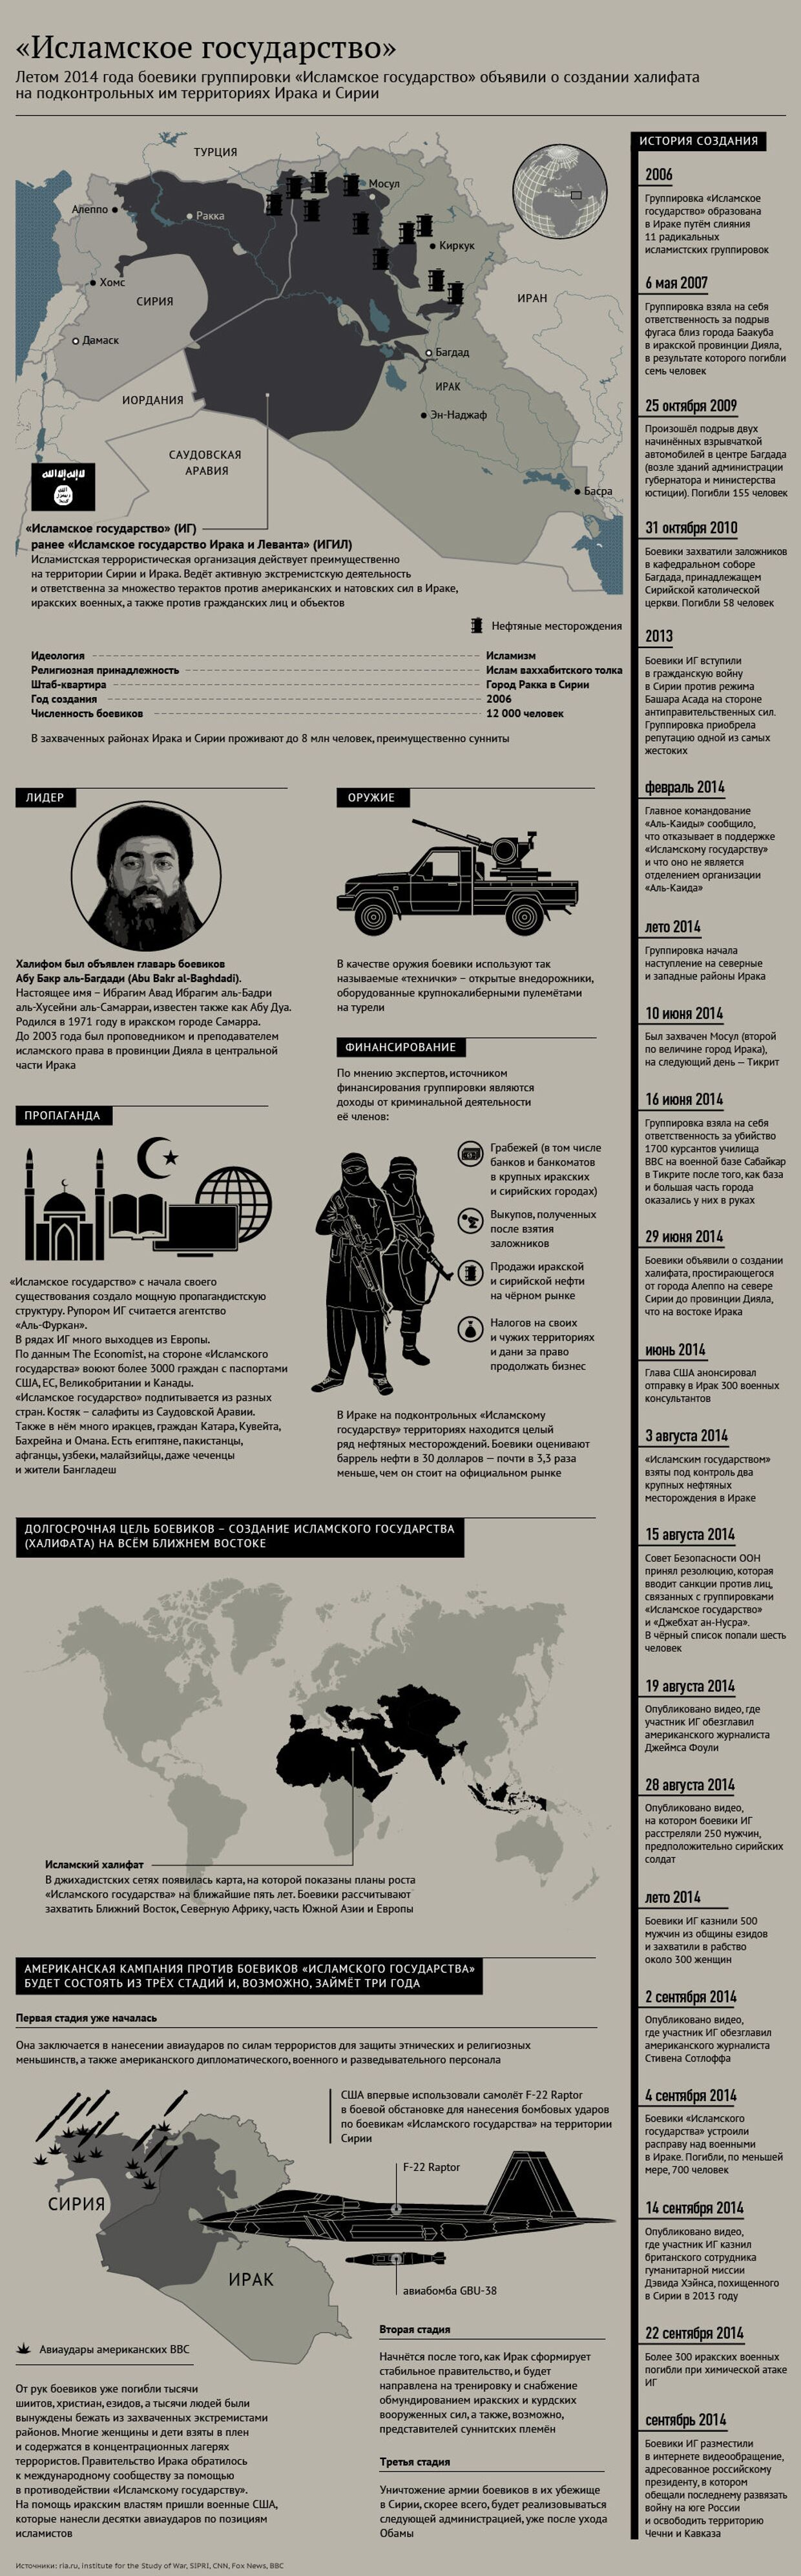 Террористическая группировка «Исламское государство»